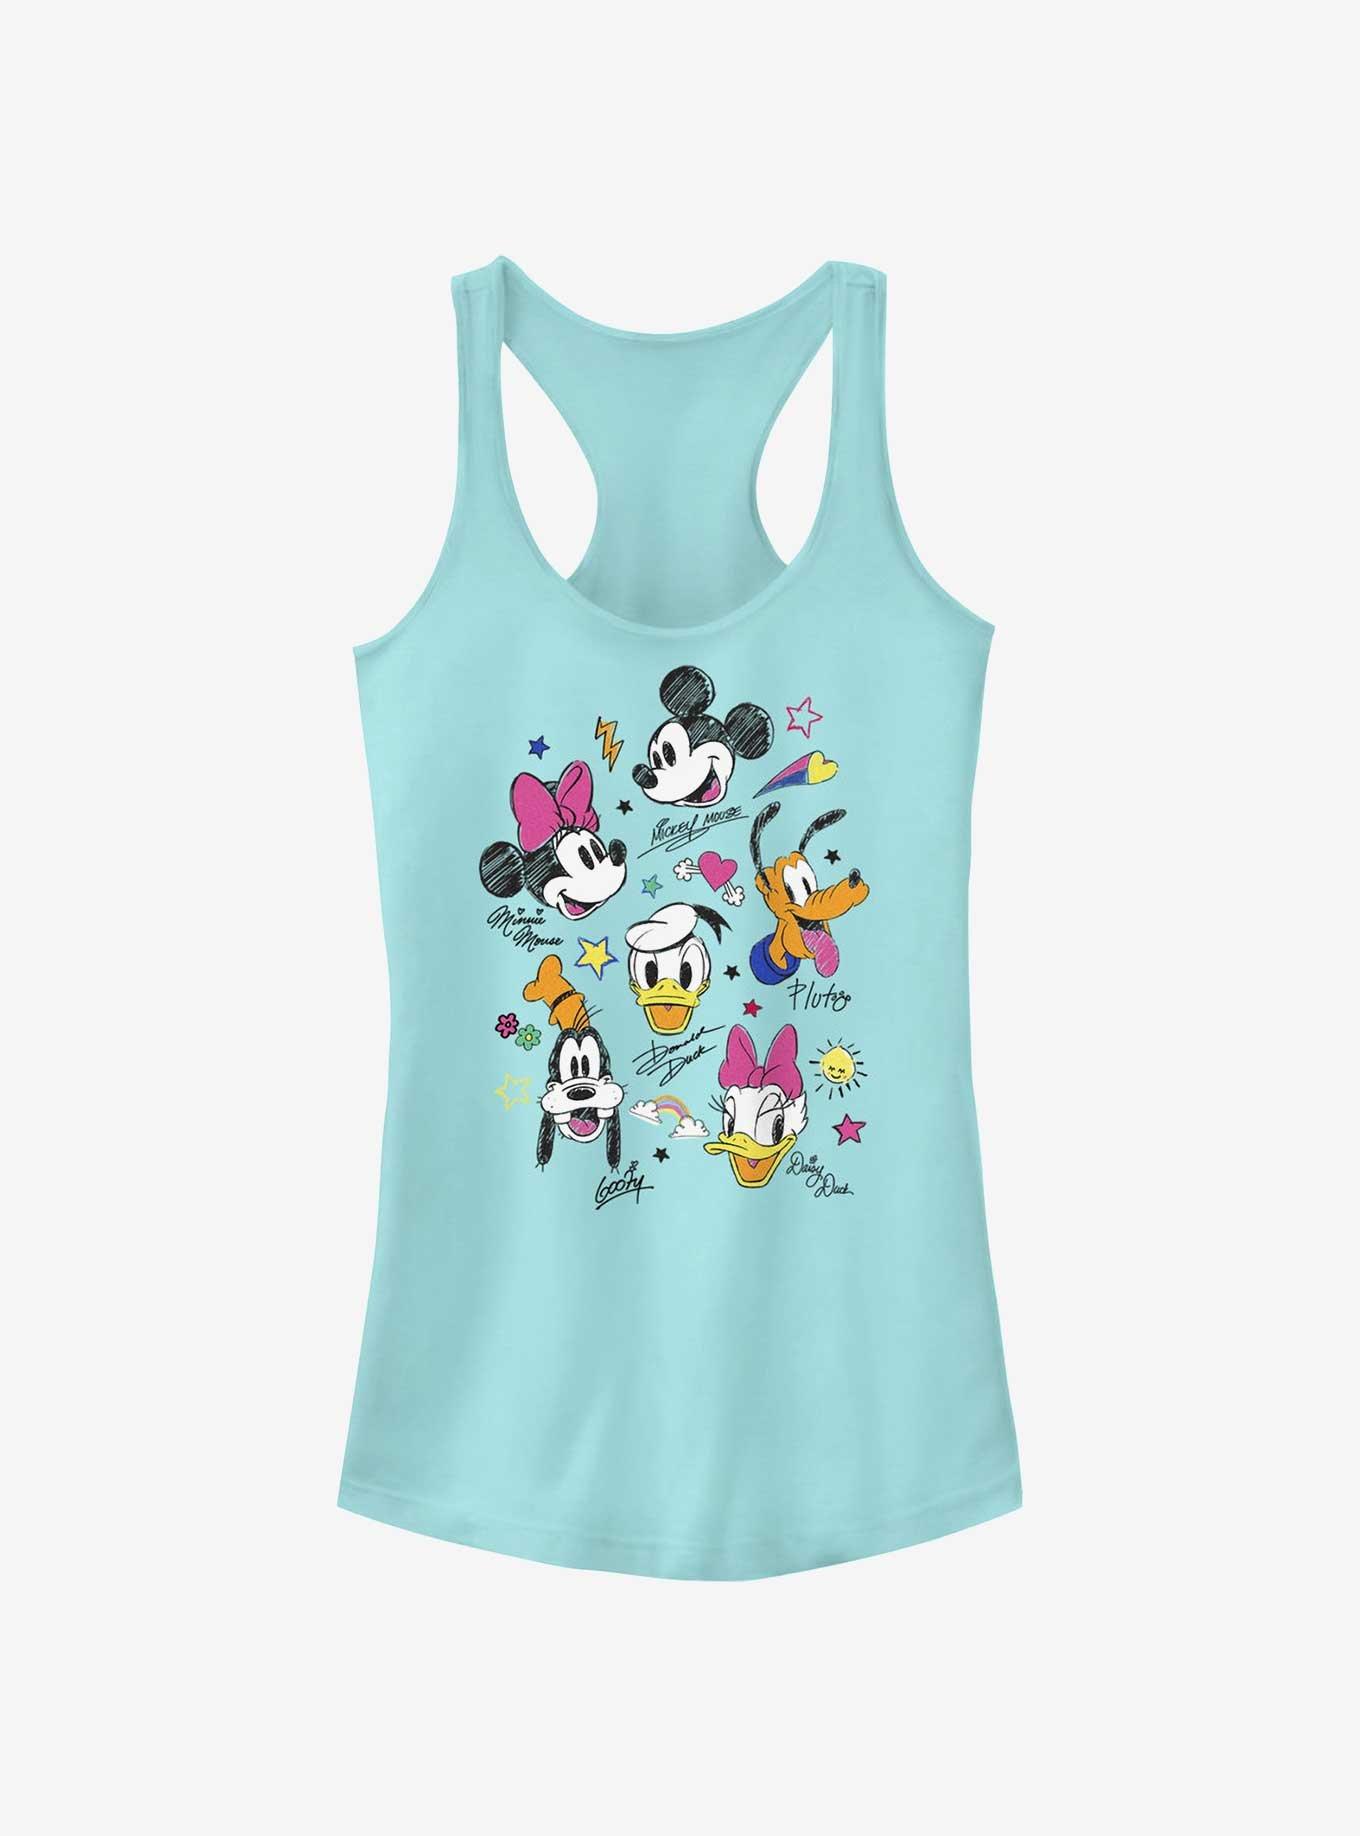 Disney Mickey Mouse Doodle Crew Girls Tank Top, CANCUN, hi-res